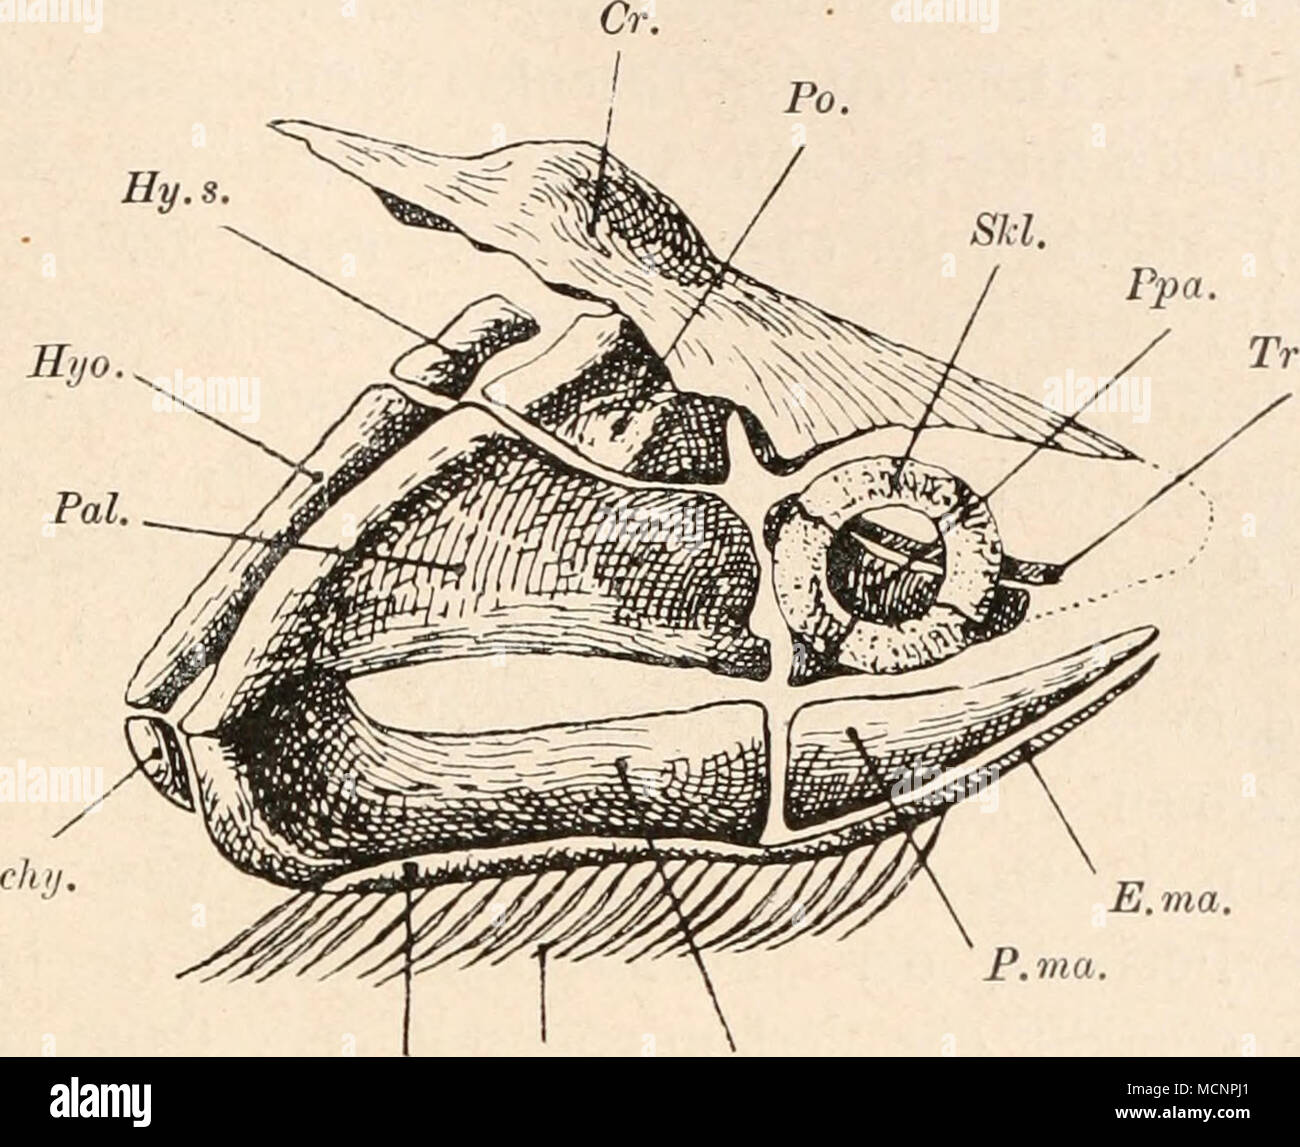 . E.ma. E.mr. Md: Fig. 114. Schädelskelett von Acanthodes Bronni, Ag., aus dem Penn Deutschlands, von rechts gesehen in nat. Gr. (Rekonstruktion von O. M. Reis, 1896, umgezeichnet und unbedeutend abgeändert.) = „Epihyomandibulare&quot; (Reis). = Unterkiefer (Mandibulare). = Palatoquadratum. = ,,Praemandibulare&quot; (Reis). = Postorbitalfortsatz. = ,,Praepalatoquadratum&quot; (Reis). = Sklerotikalring. = ..Trabeculare&quot; (Reis). Cr. = Dorsaler Vorsprung des Knorpel- Hv. s. kraniums. Md. chy. = Ceratobranchiale (nachjaekel, Pal. 1913; fehlt in der Zeichnung P. ma. von Reis). Po. E. ma. = „ex Stock Photo